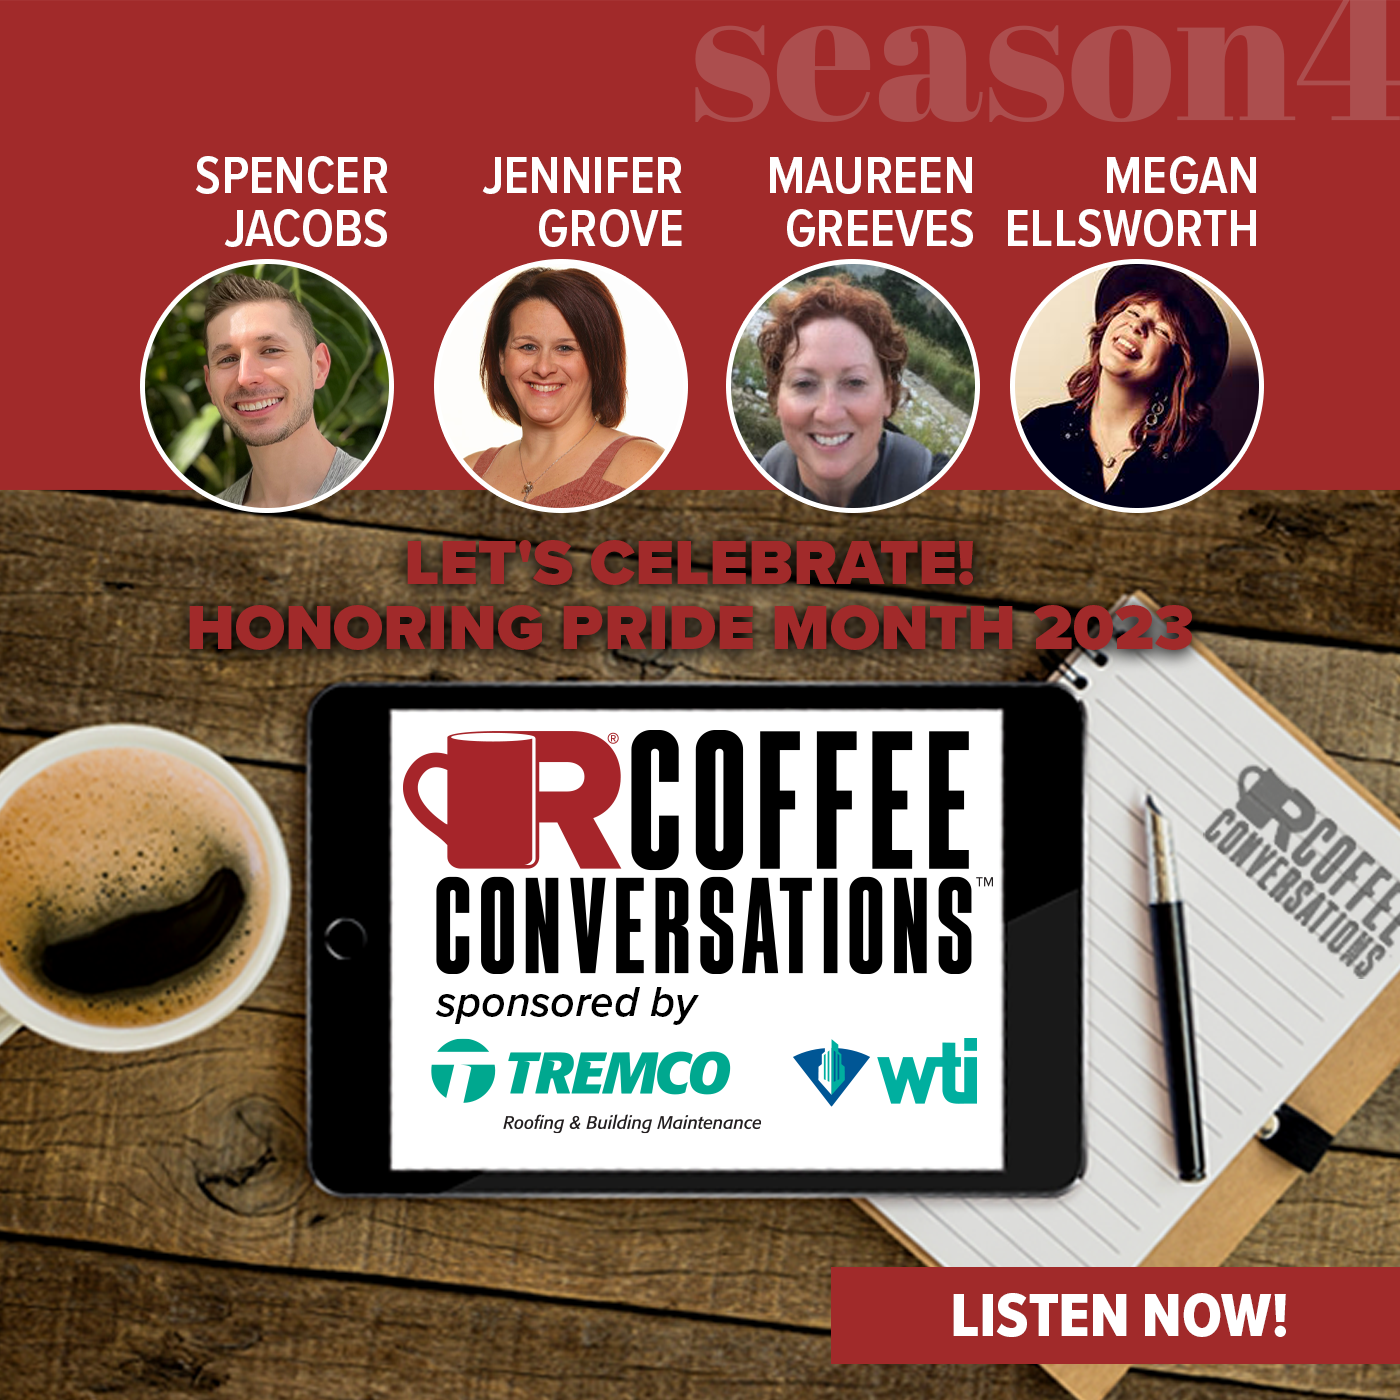 Tremco/WTI - Coffee Conversations - Let